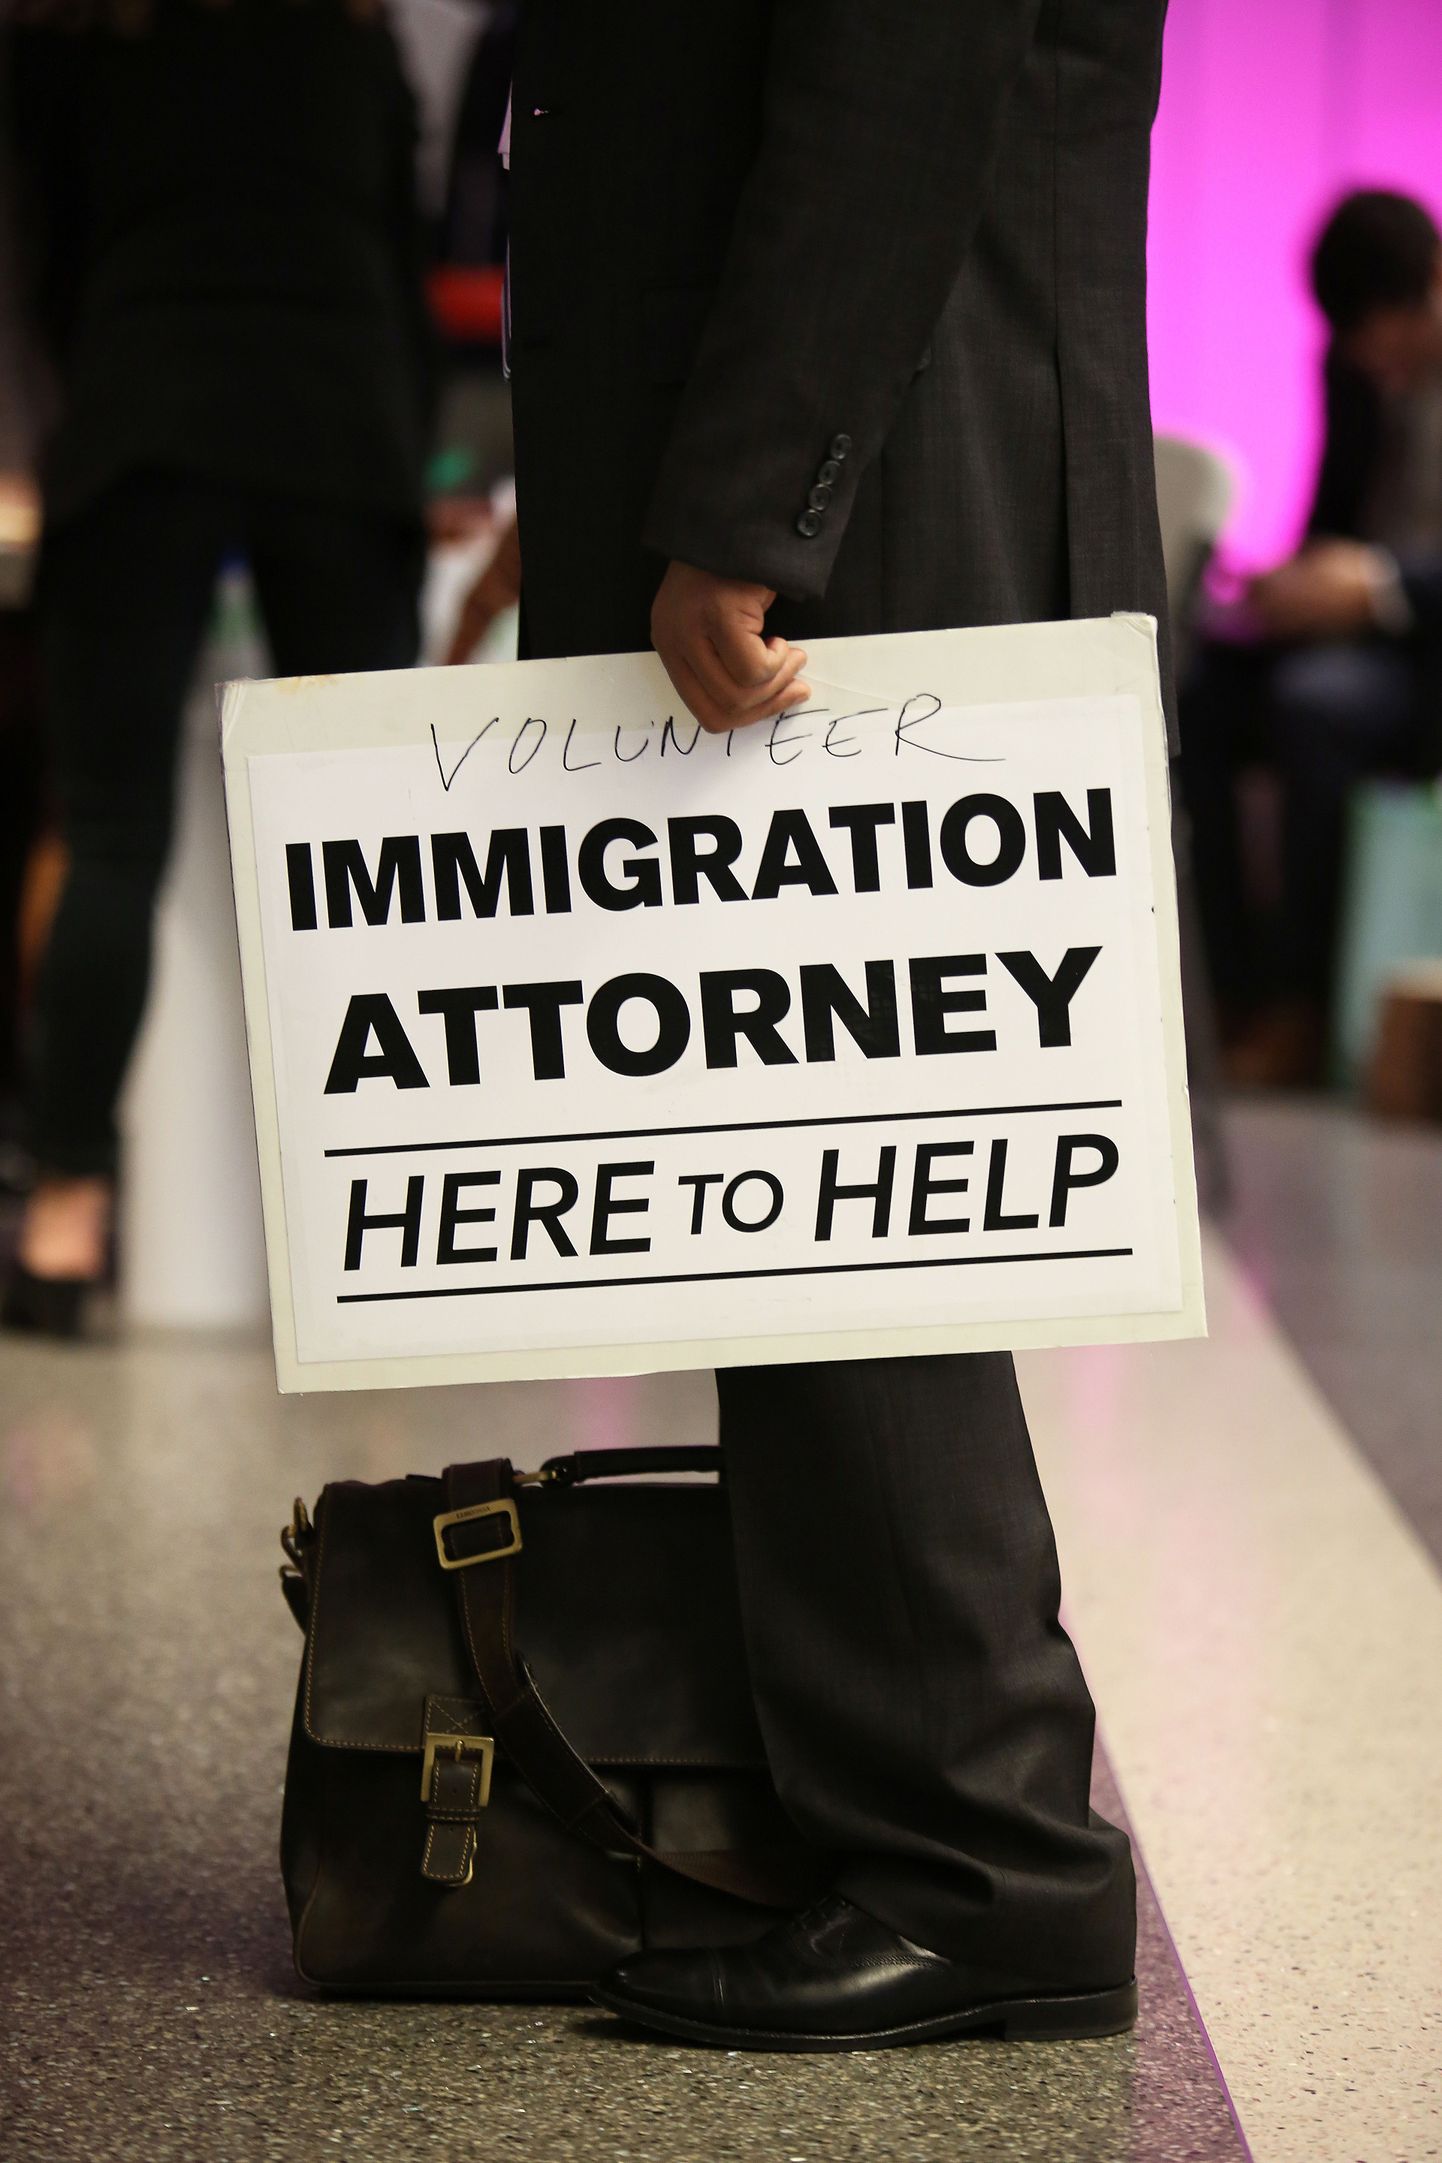 Immigratsiooniga tegelev advokaat Los Angelese lennujaamas tasuta abi pakkumas